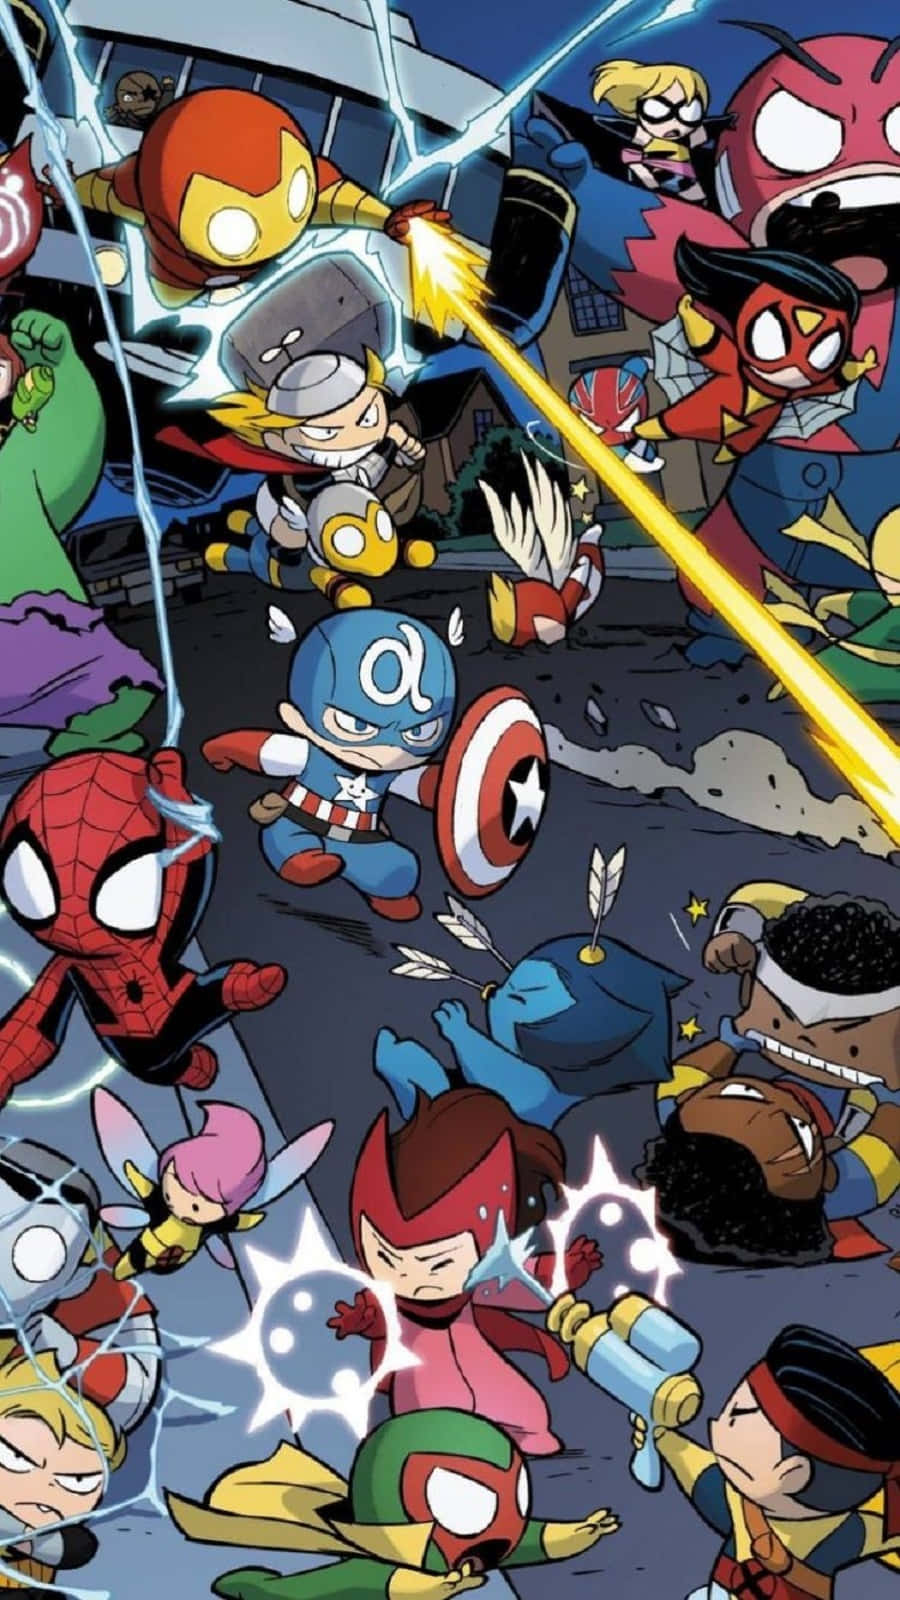 Marvel's Avengers Unite Wallpaper